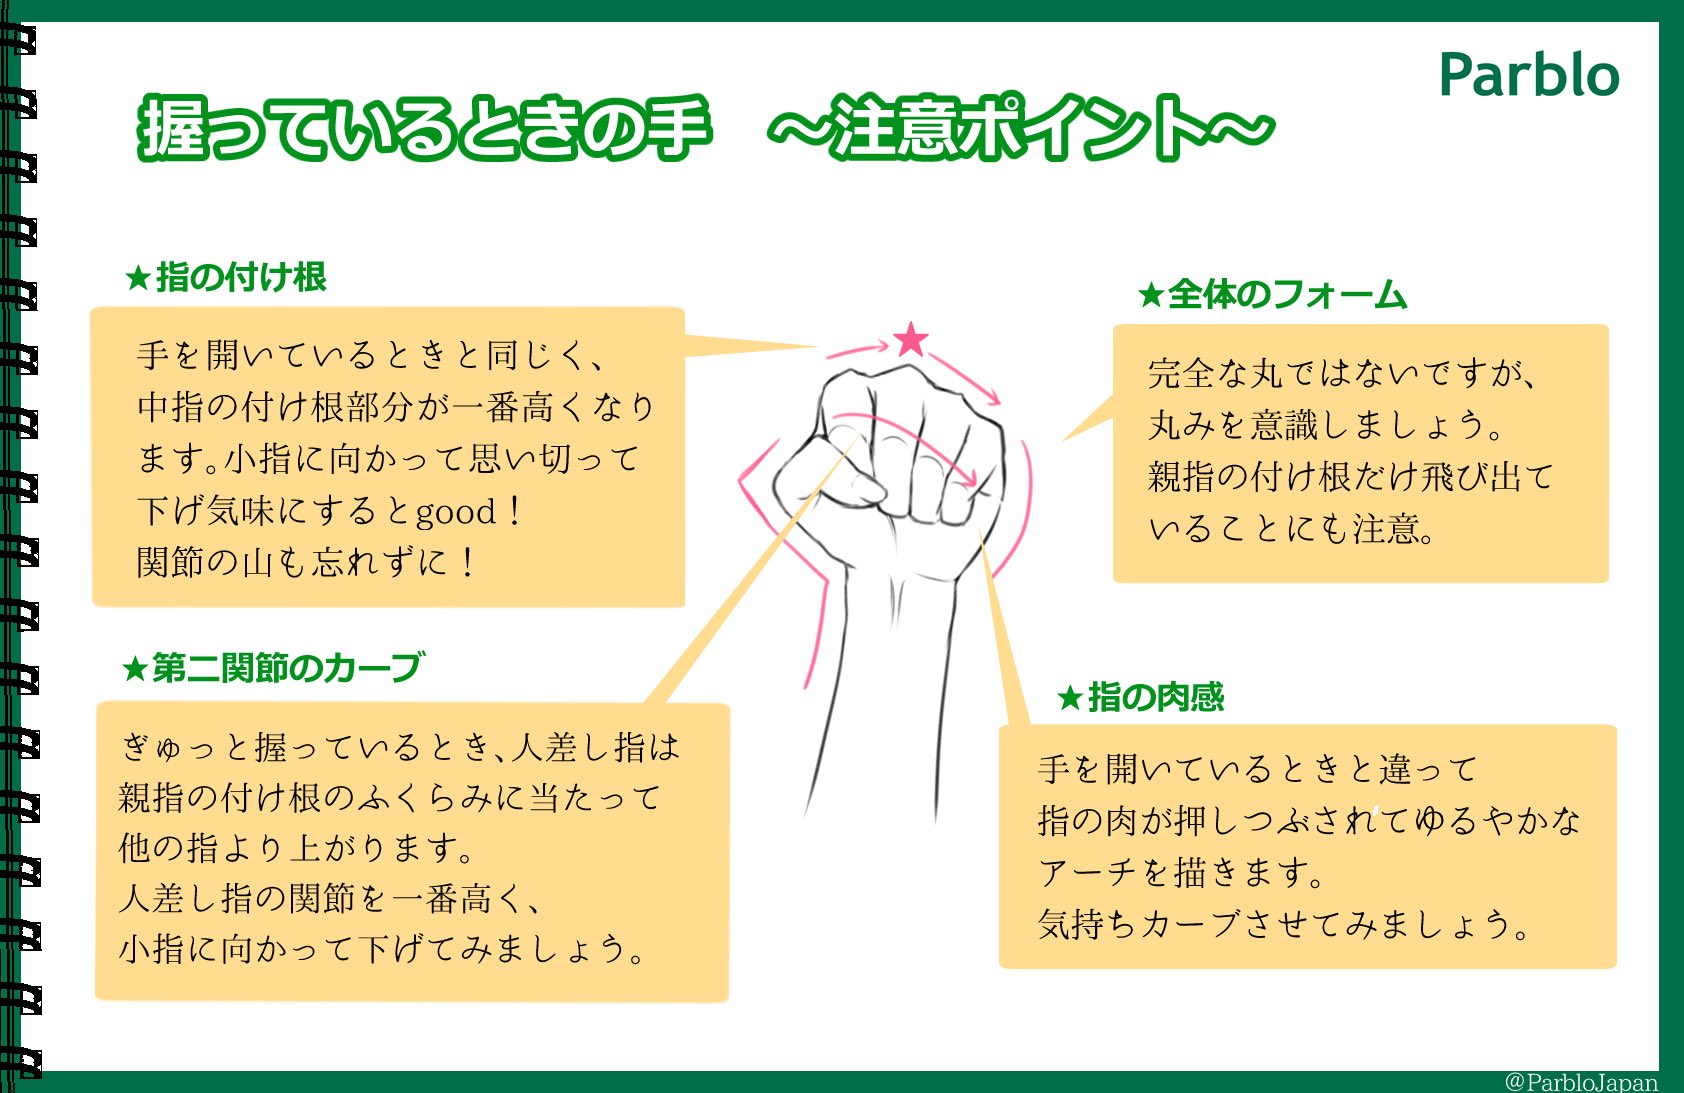 Parblo Japan 本日は 握っているときの手の描き方 を簡単解説 開いている時と違って少し難しいですよね 絵描きさんと繋がりたい イラスト好きさんと繋がりたい Parblo T Co 2gpbq3n5x4 Twitter